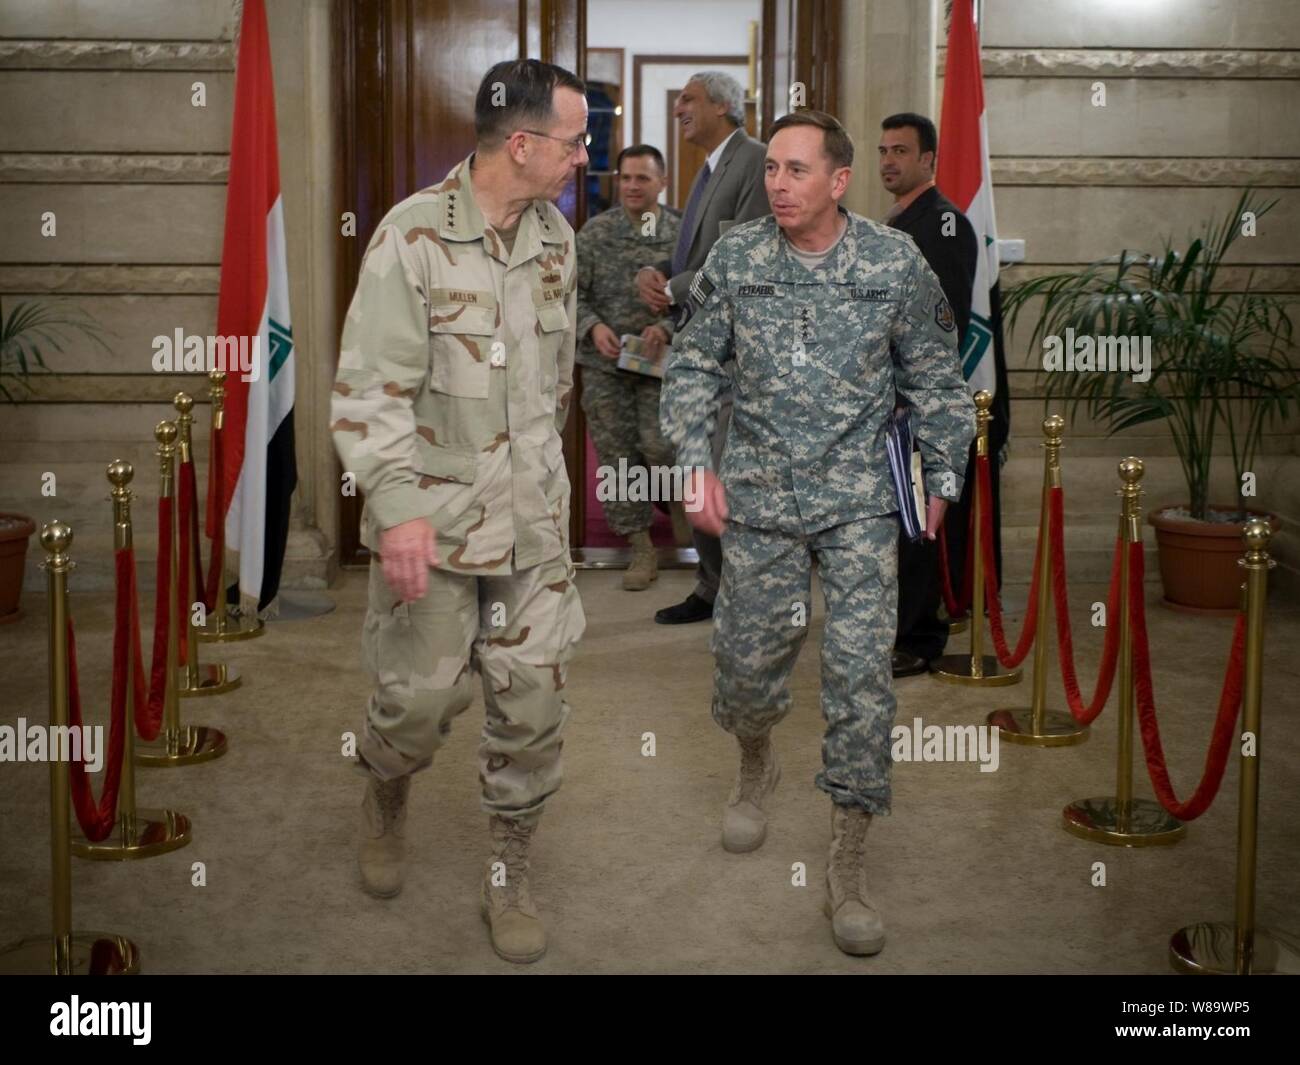 Presidente de la Junta de jefes de personal adm. Mike Mullen (izquierda), la Marina de los Estados Unidos, y el Comandante General de la multinacional (Gen. David Petraeus Force-Iraq (derecha), el Ejército de los Estados Unidos, salir de una reunión con el Primer Ministro iraquí Nouri al-Maliki en Bagdad, Irak, el 9 de julio de 2008. Mullen se encuentra en un viaje de seis días por la región para visitar tropas y alojar un osu tour show. Foto de stock